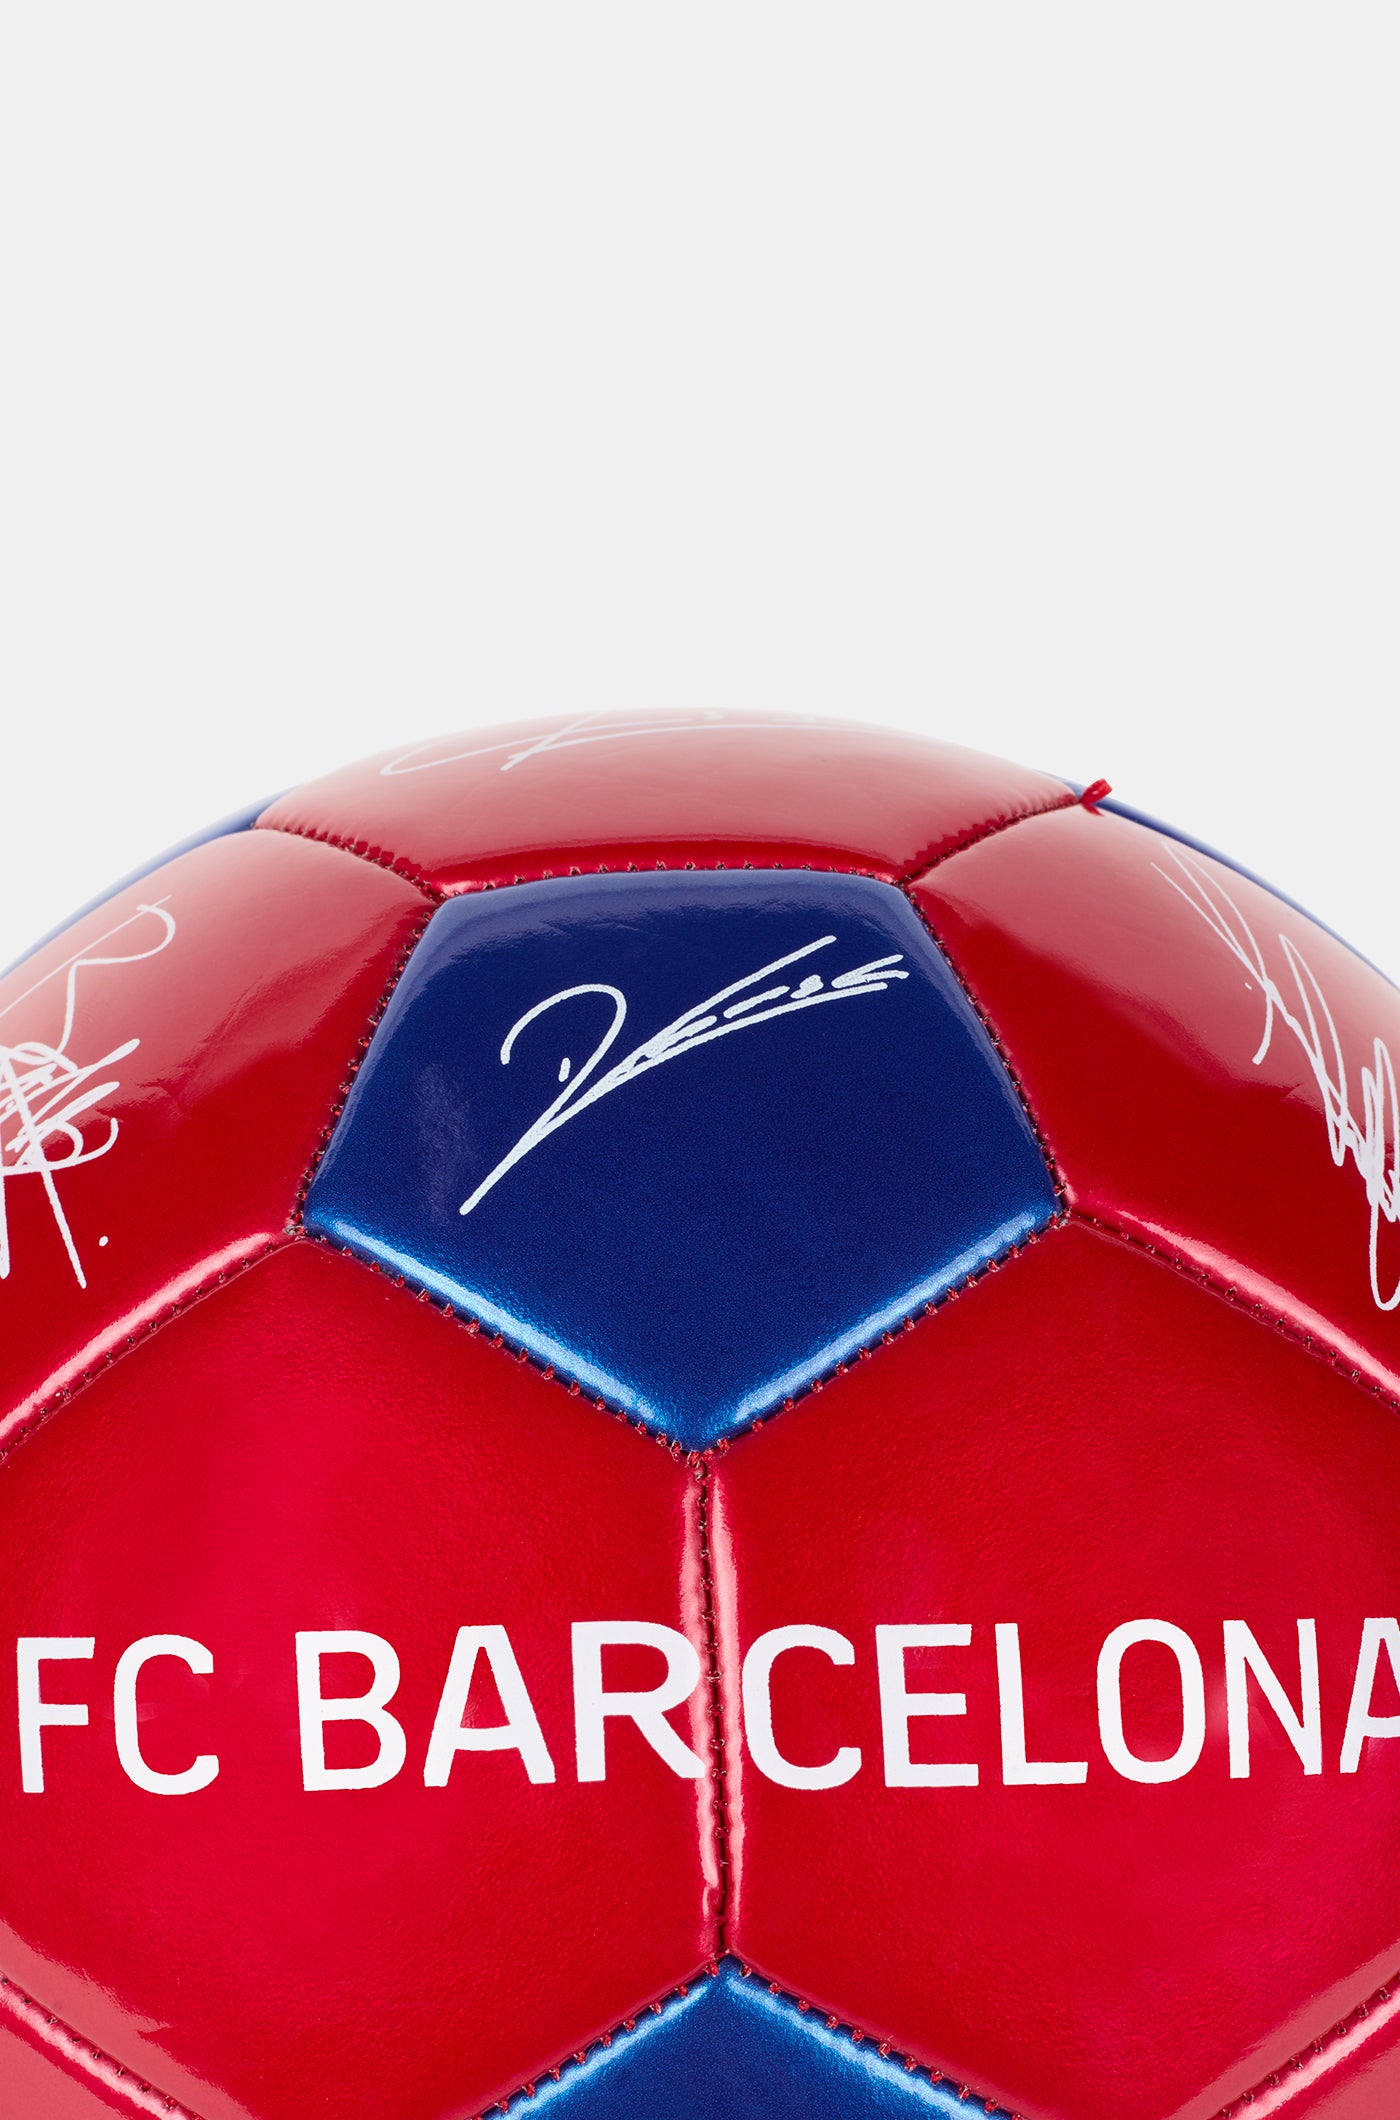 Ballon FC Barcelone - Grand 